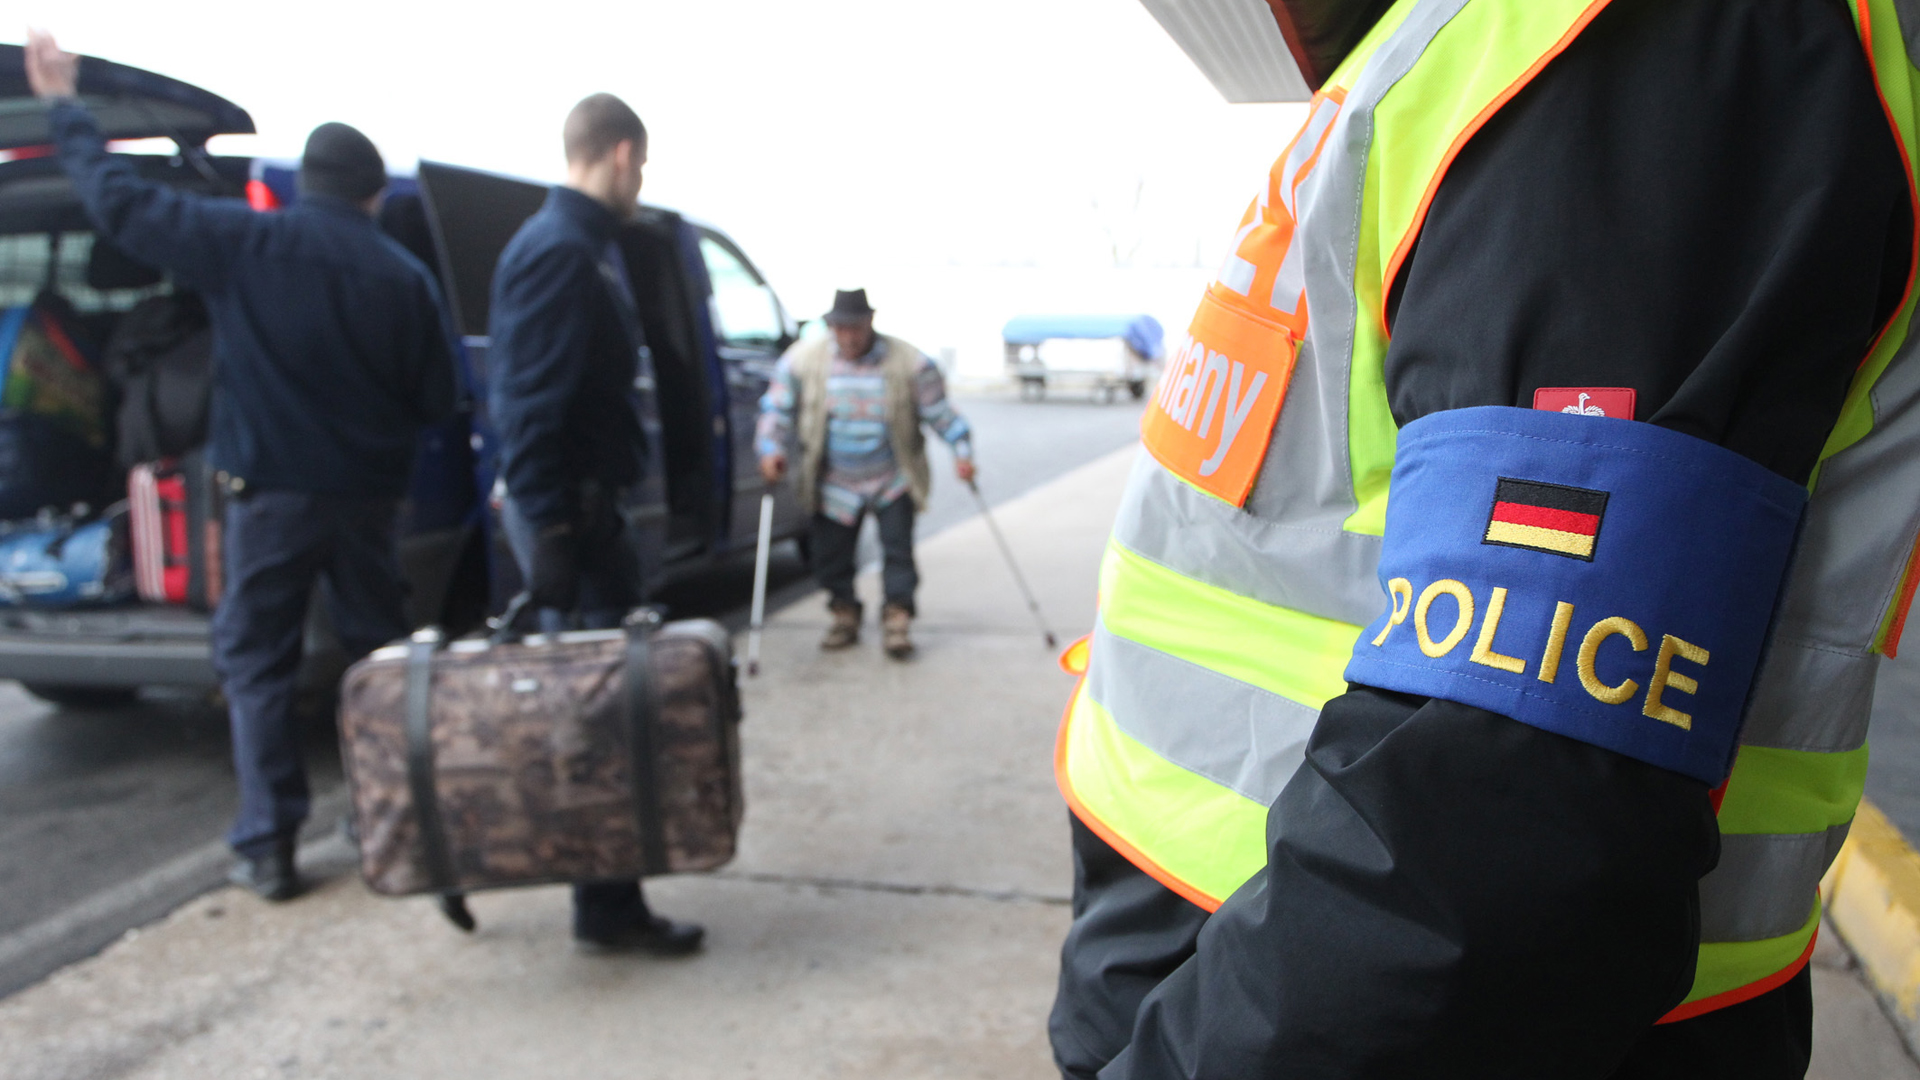 Polizisten begleiten abgelehnte Asylbewerber (Archivbild) | Bildquelle: dpa